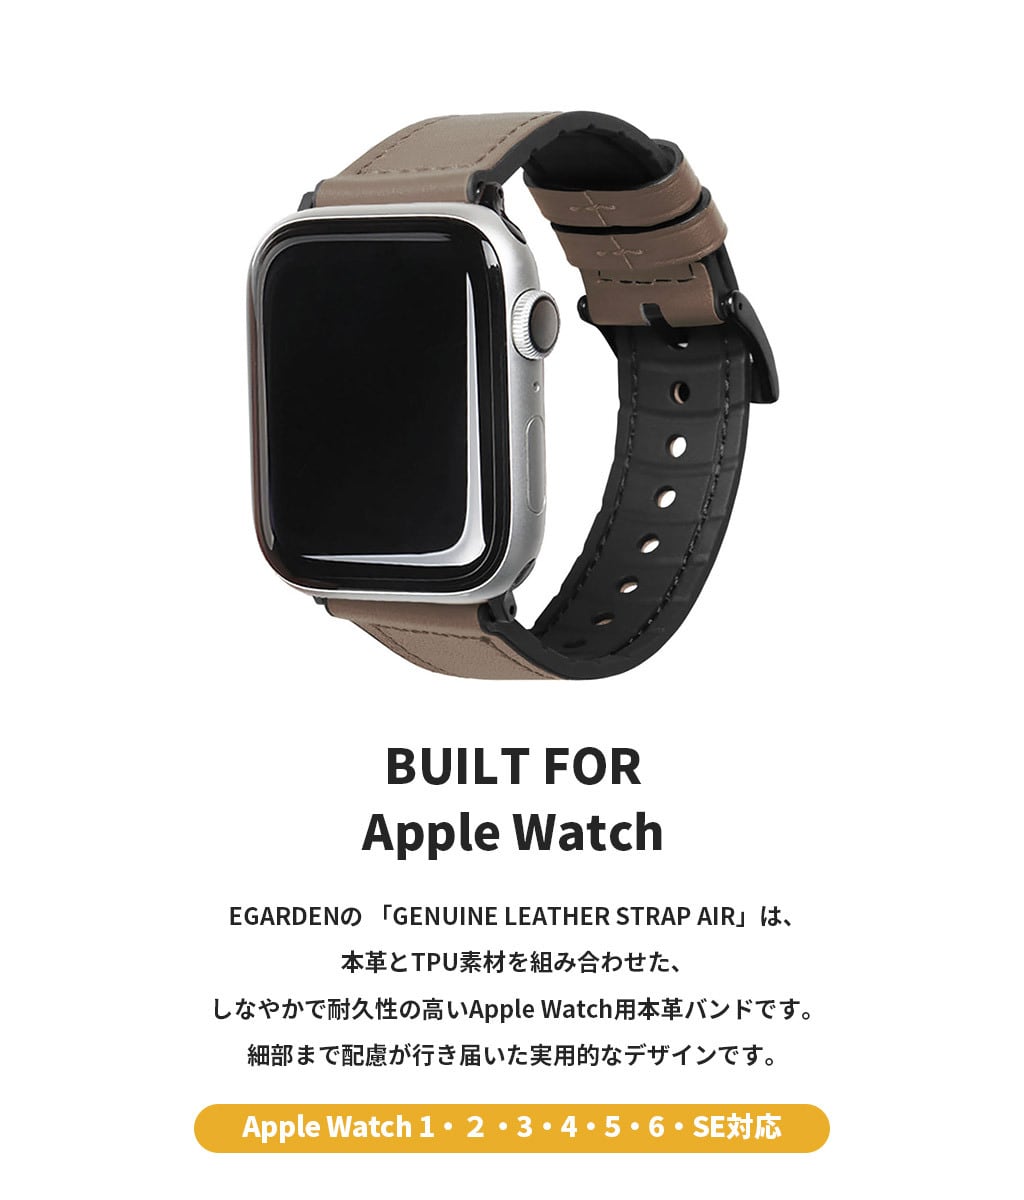 国内正規品 EGARDEN エガーデン Apple Watch GENUINE LEATHER STRAP